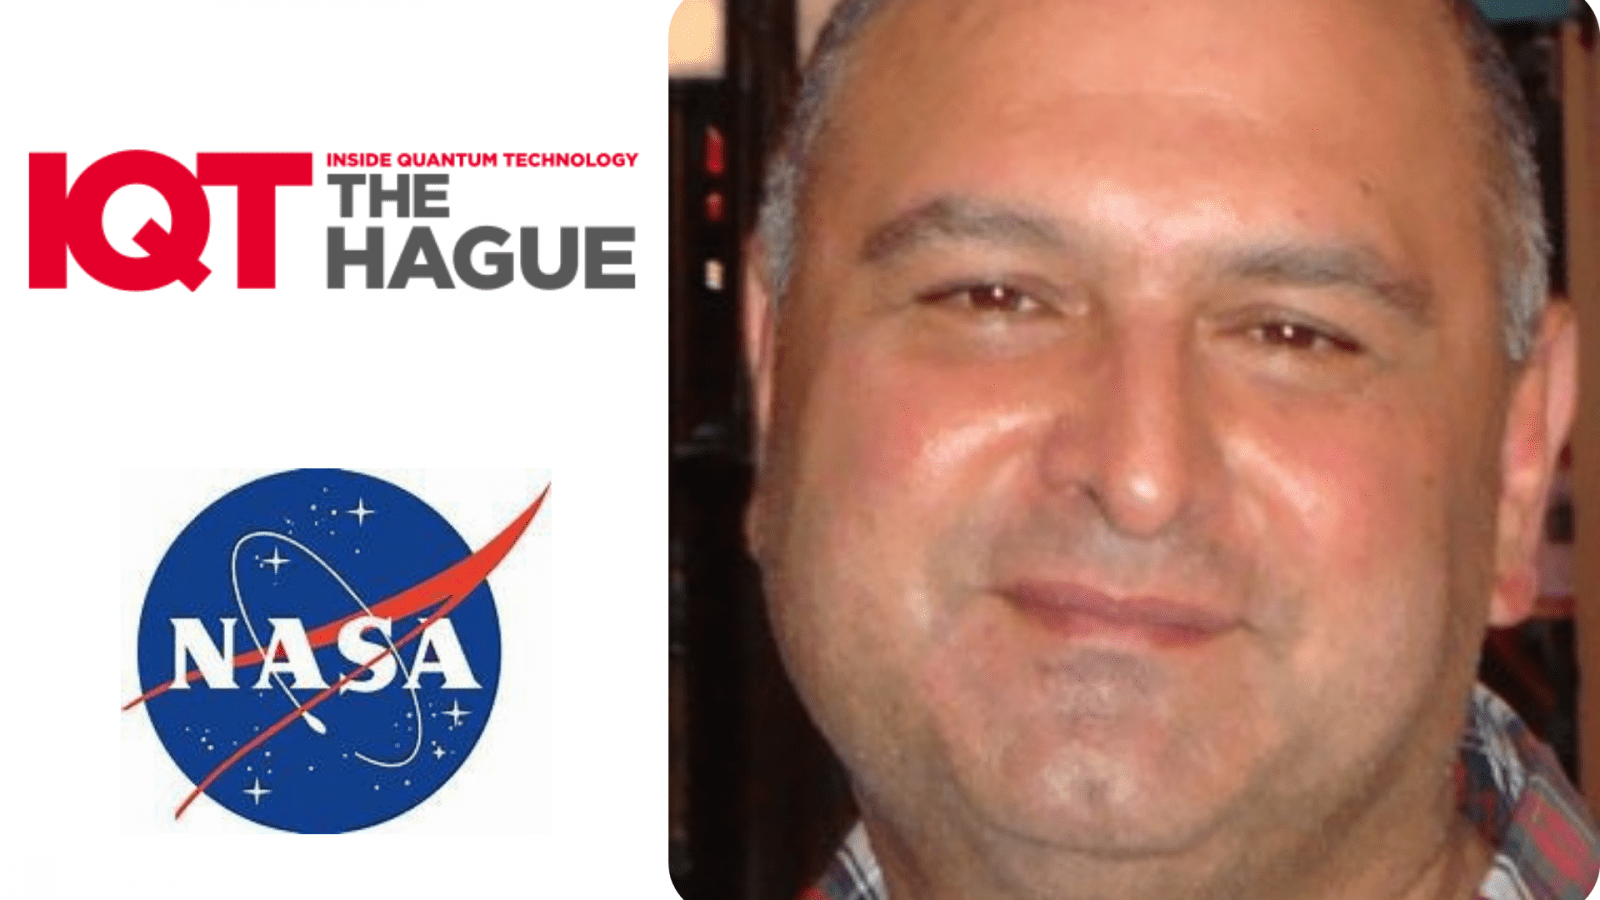 Actualización de IQT the Hague: Babak Saif, científico del programa de comunicaciones cuánticas de la NASA, será orador en 2024 - Inside Quantum Technology